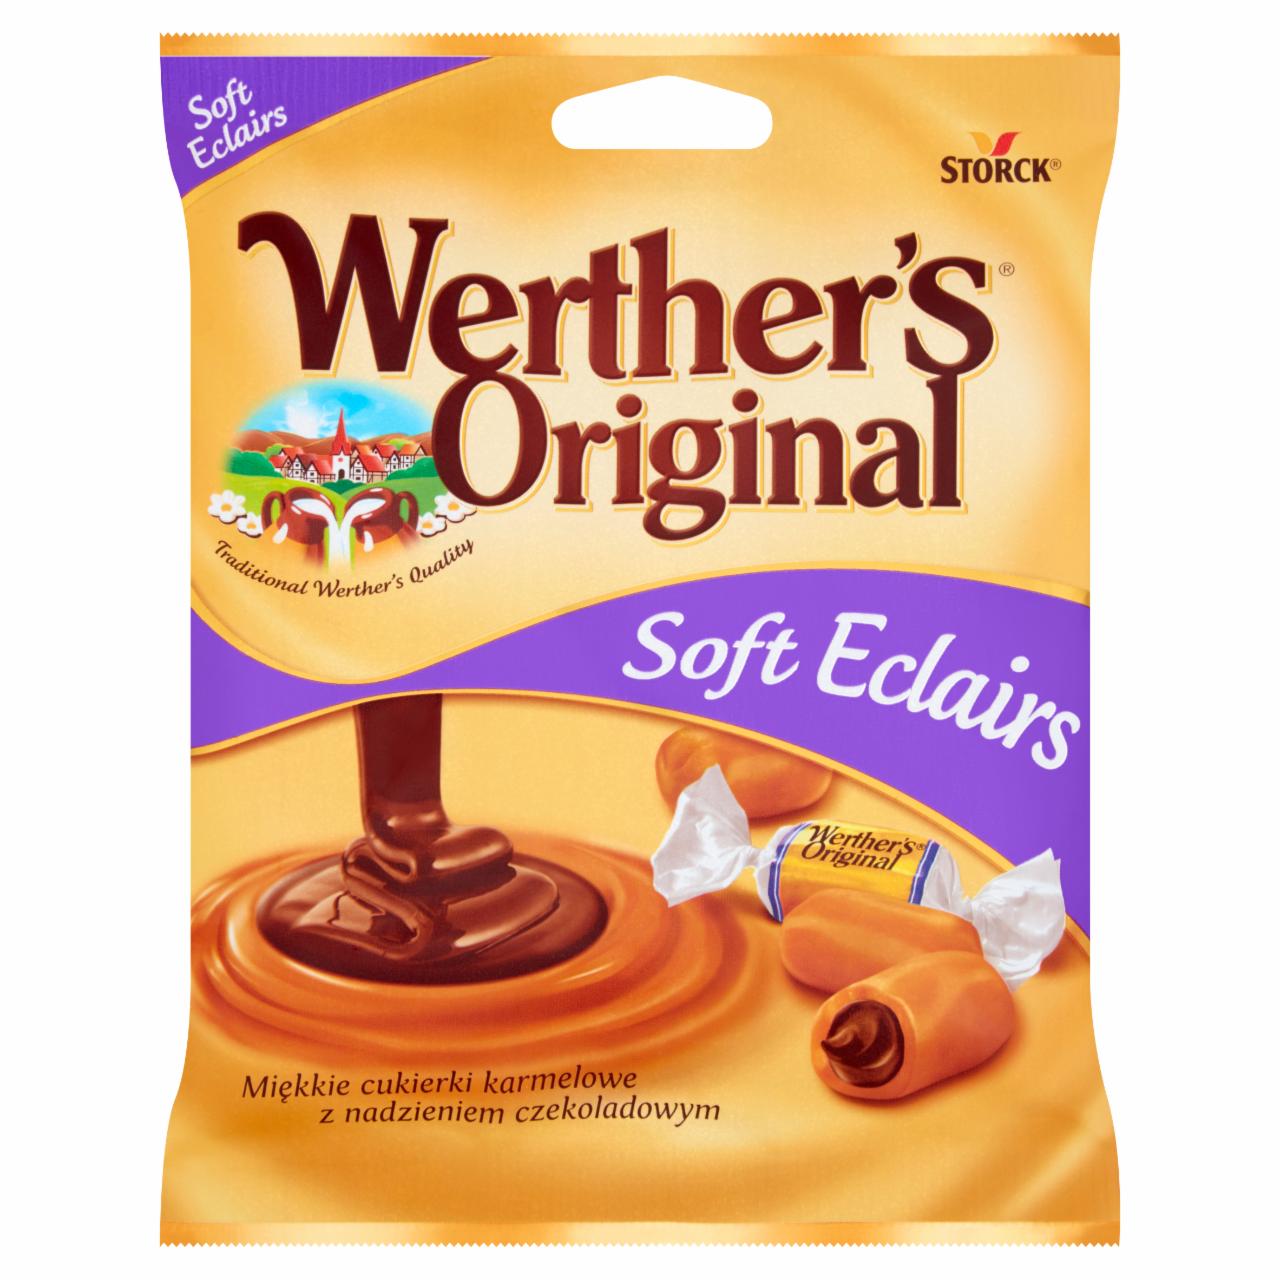 Zdjęcia - Werther's Original Soft Eclairs Miękkie cukierki karmelowe z nadzieniem czekoladowym 70 g